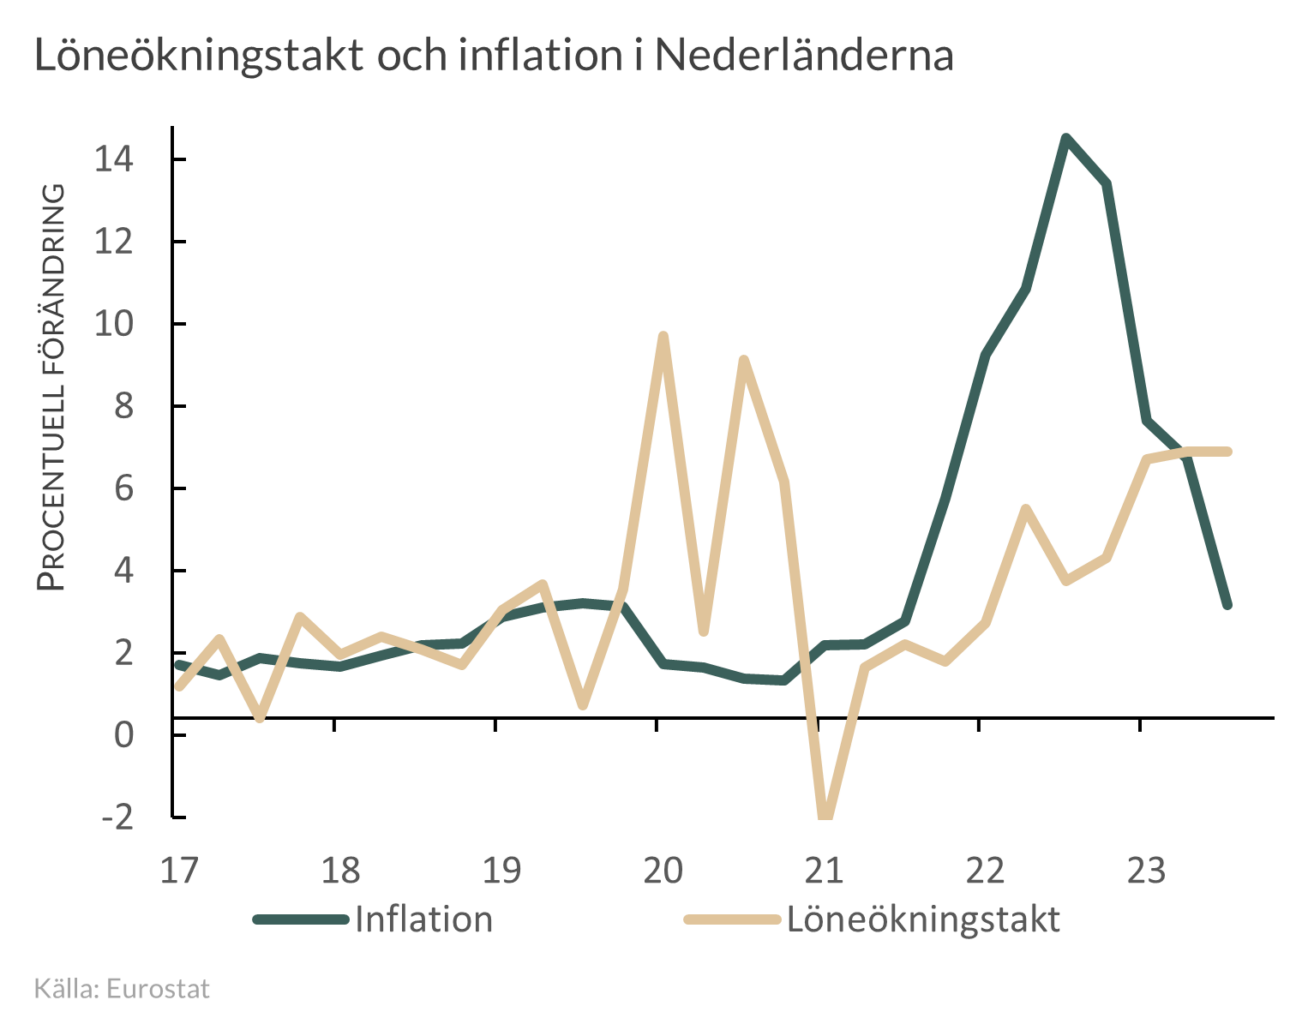 Löne- och inflationsutveckling i Nederländerna 2017-2023